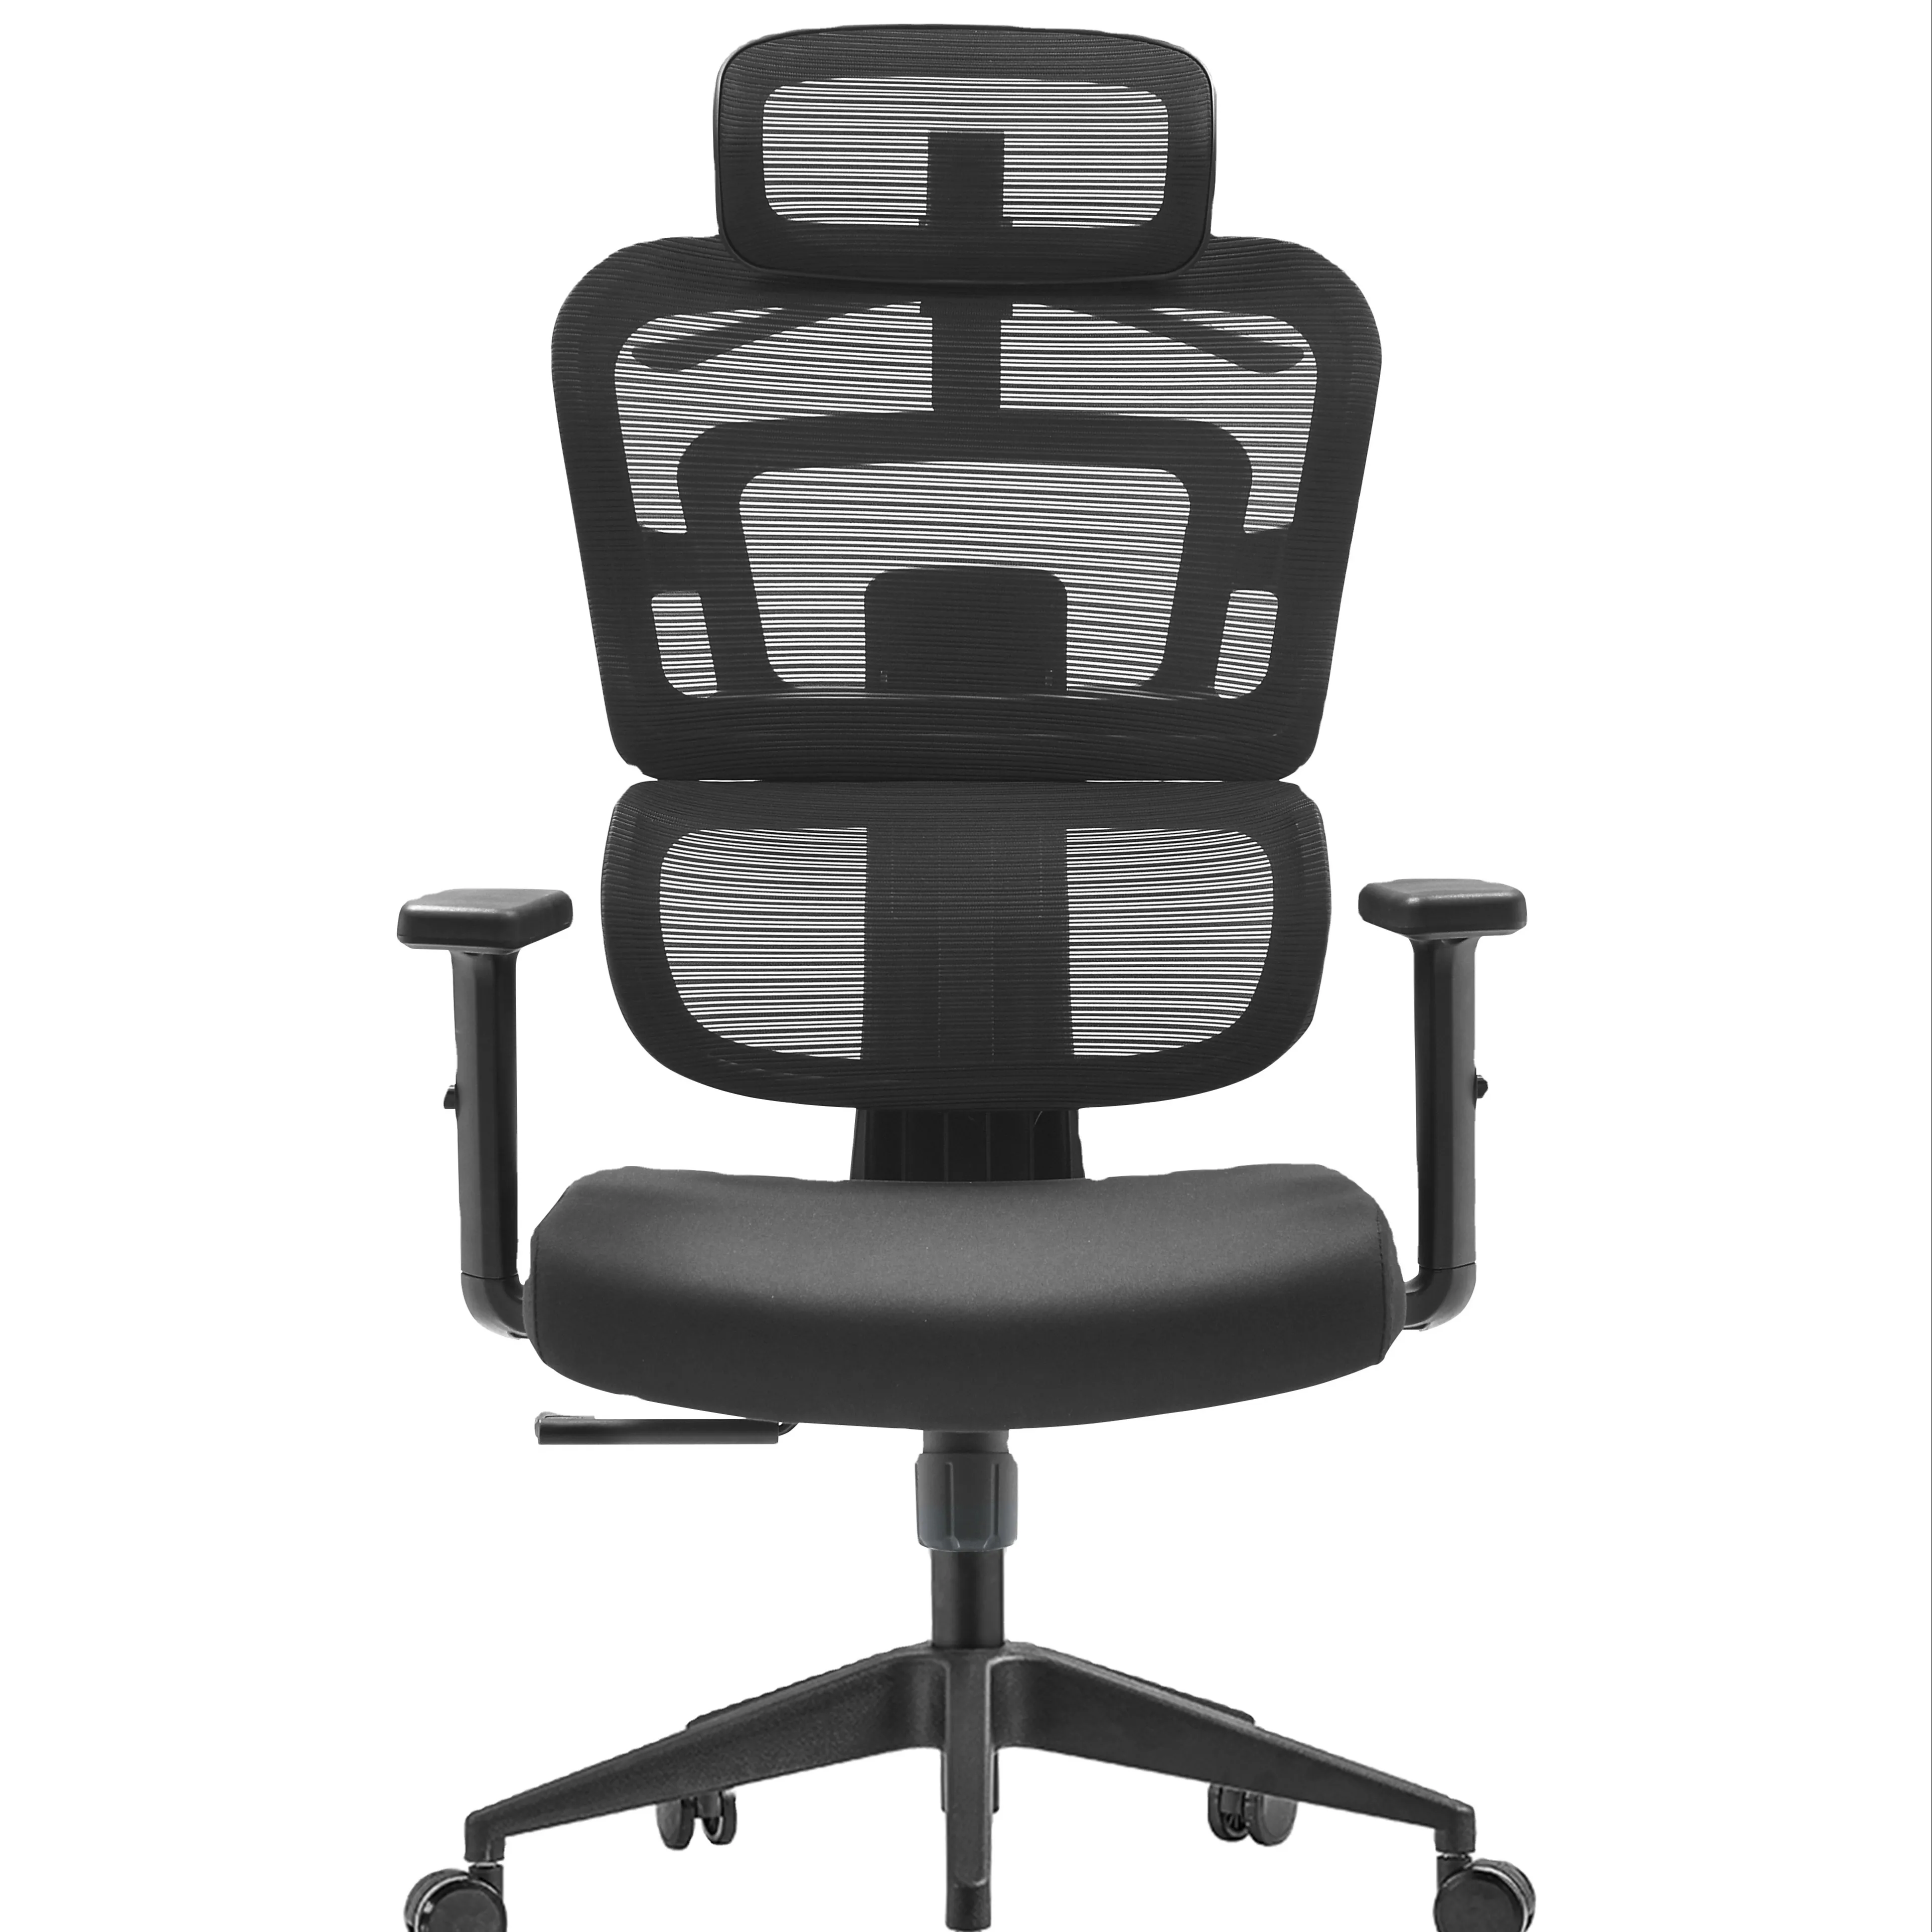 Malha chaises de convidado gerente escritório cadeira ergonômica moderna de alta qualidade do escritório cadeiras confortáveis para o escritório